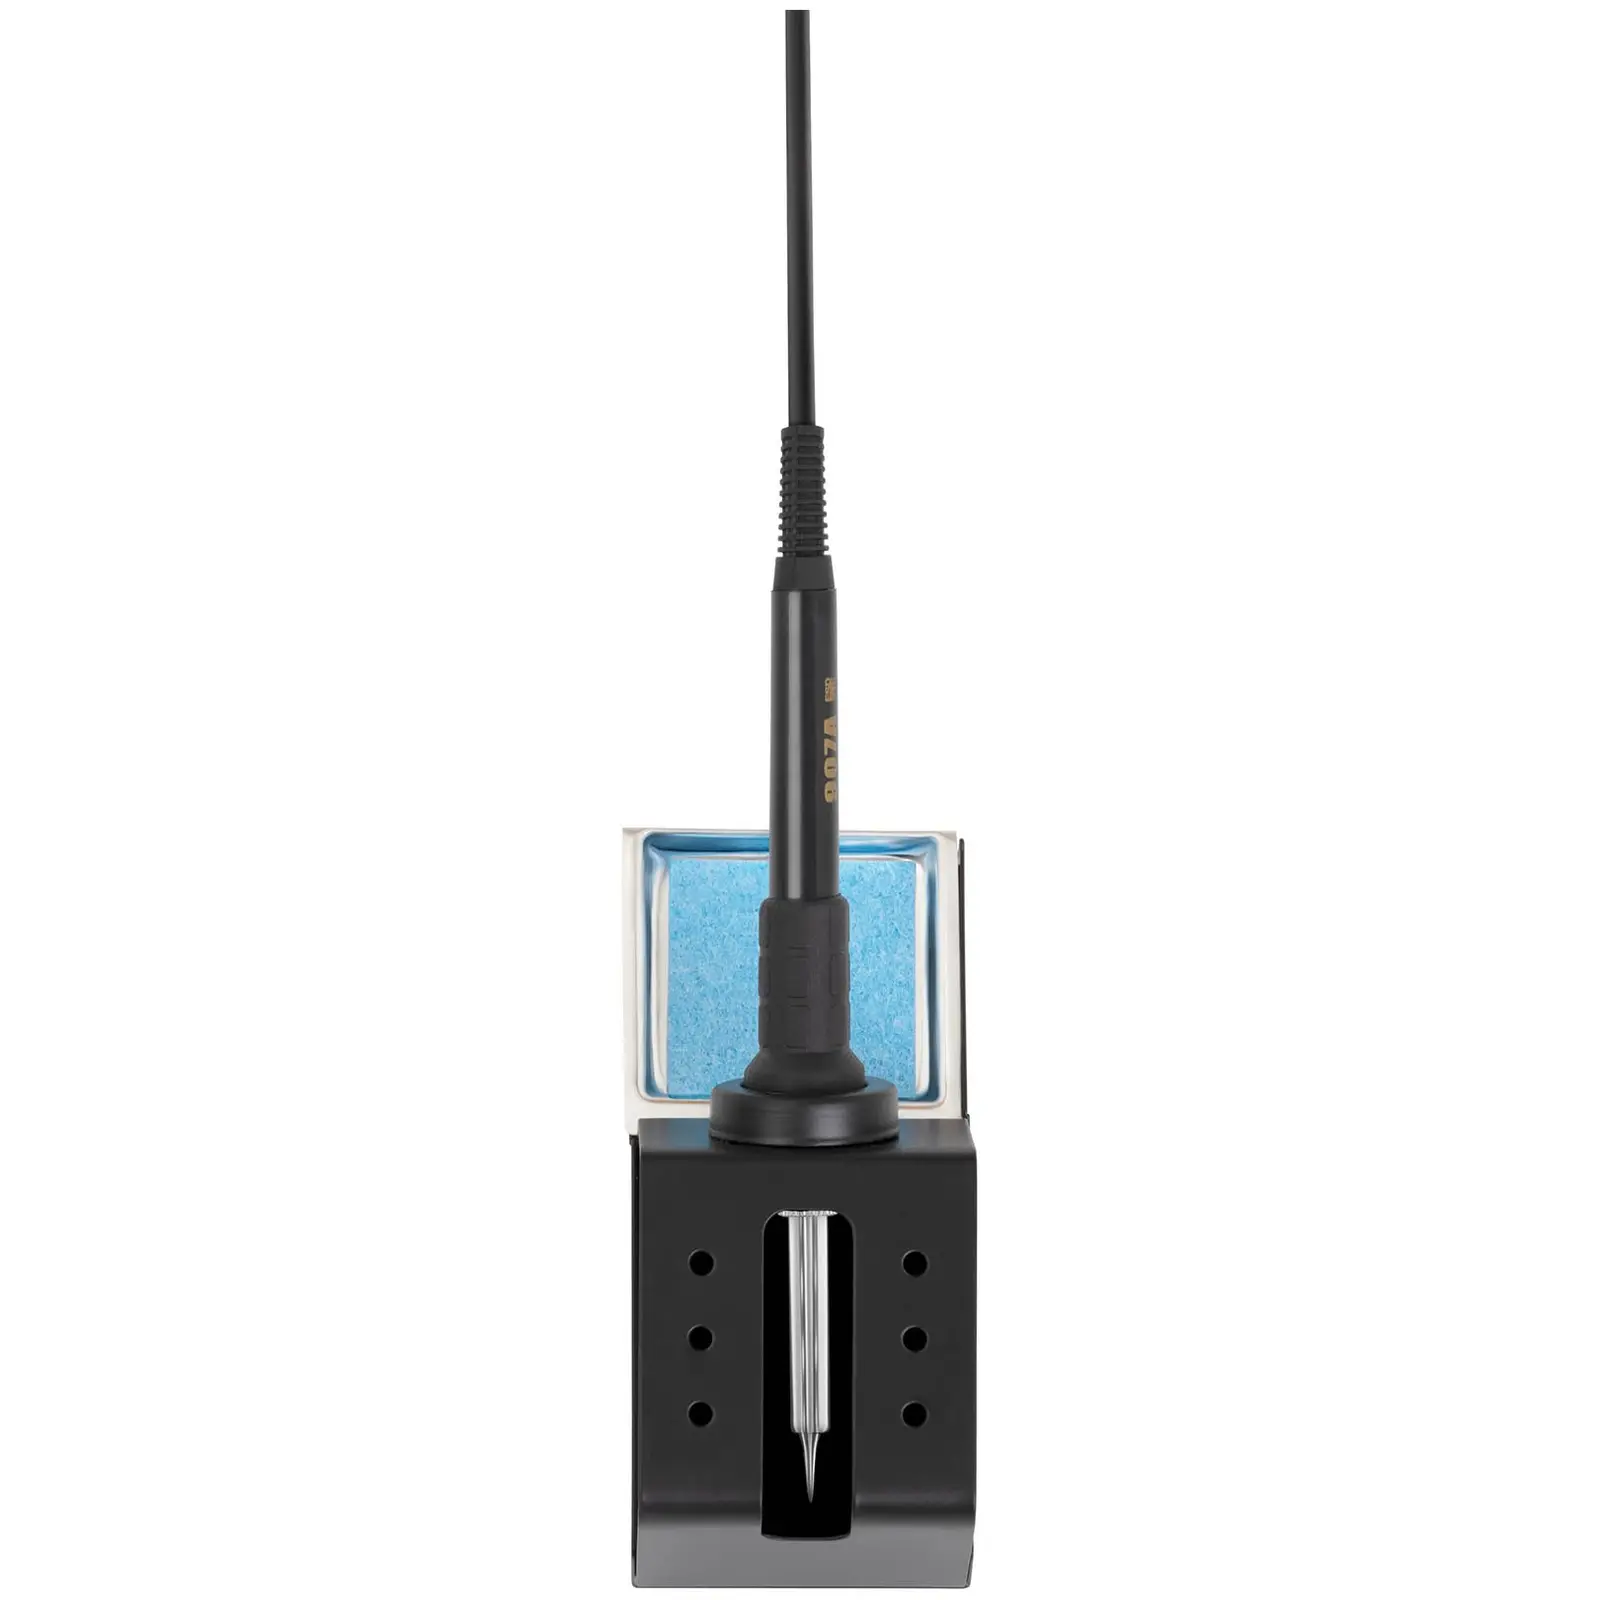 Station de soudage numérique - 65 watts - Écran LED - Basic